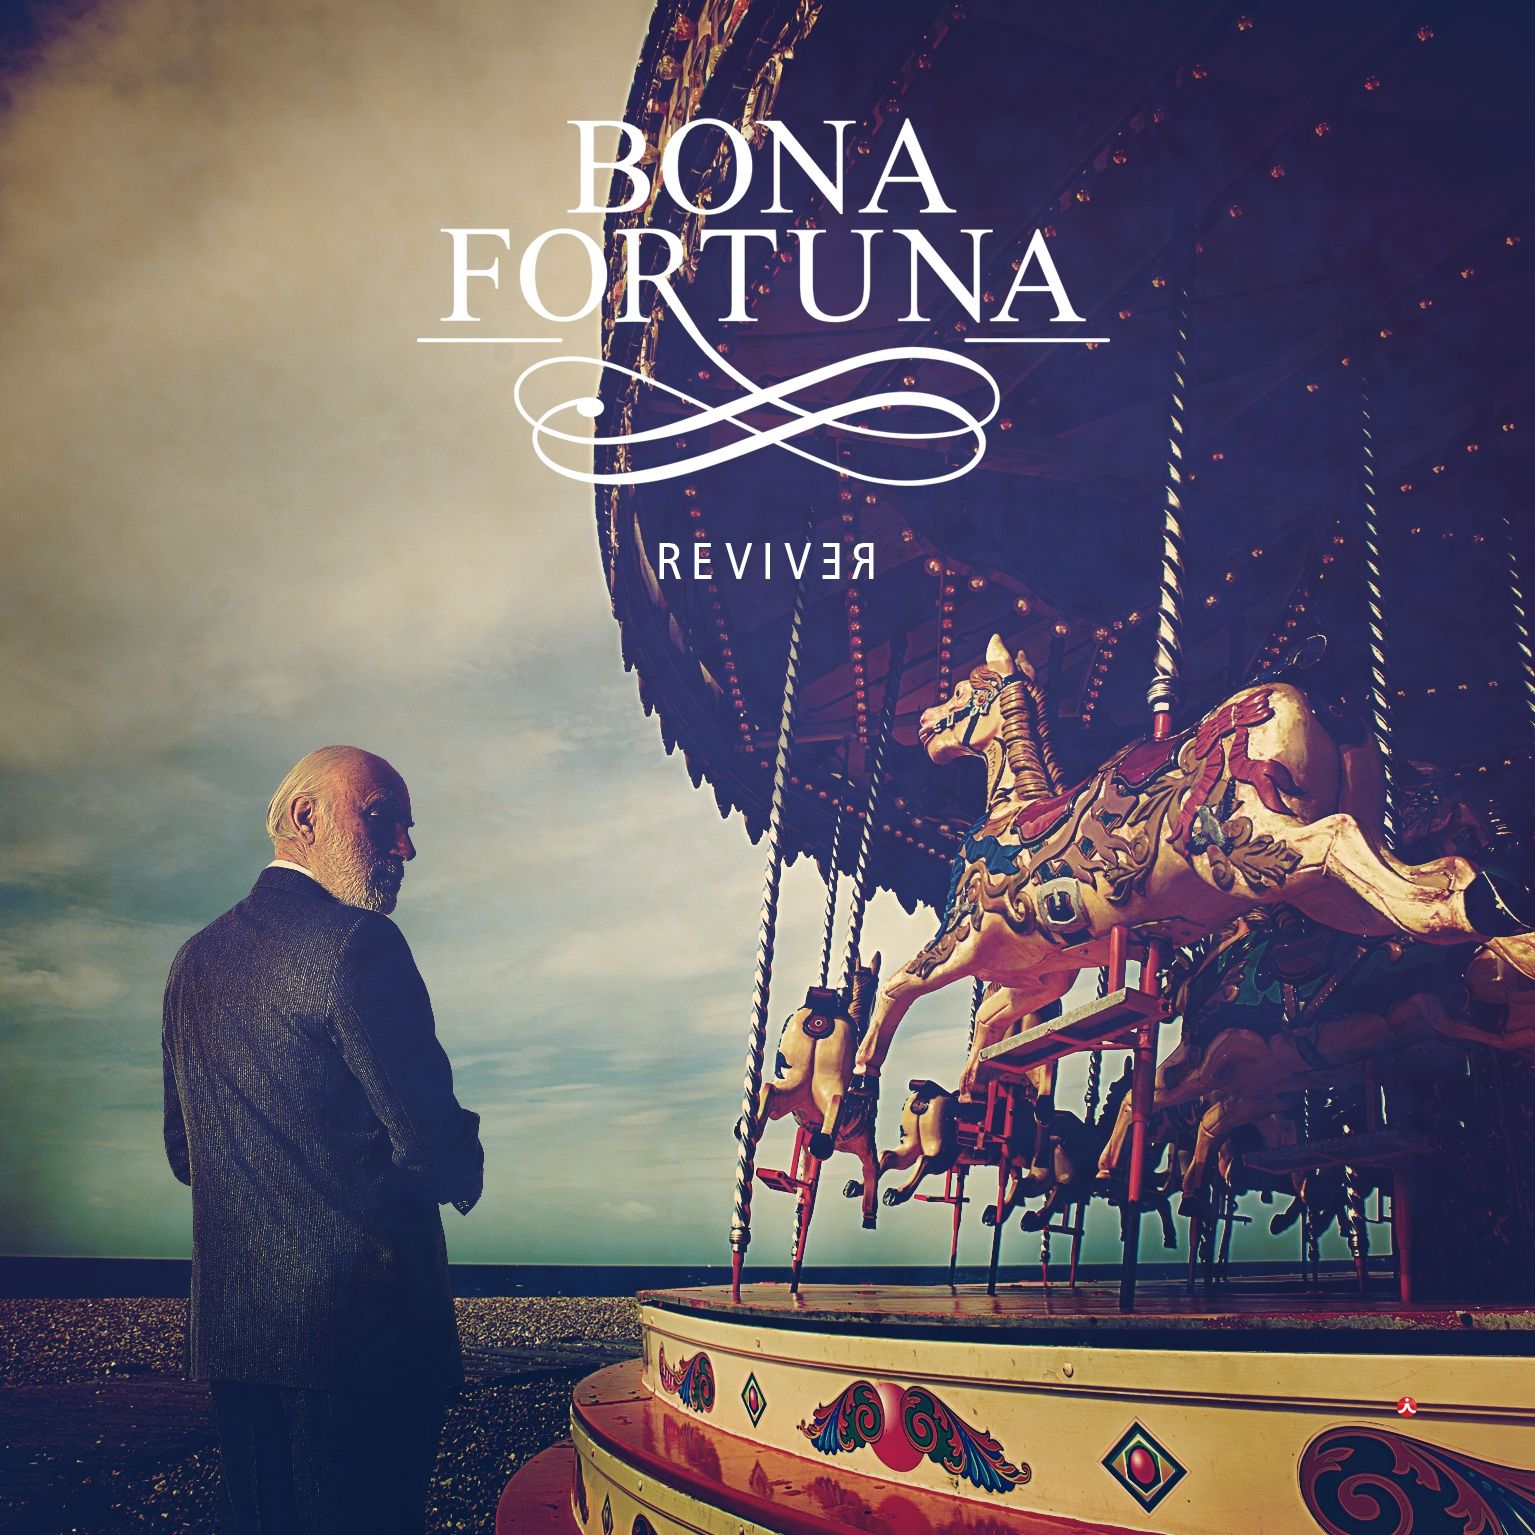 Imagem do álbum Reviver do(a) artista Bona Fortuna